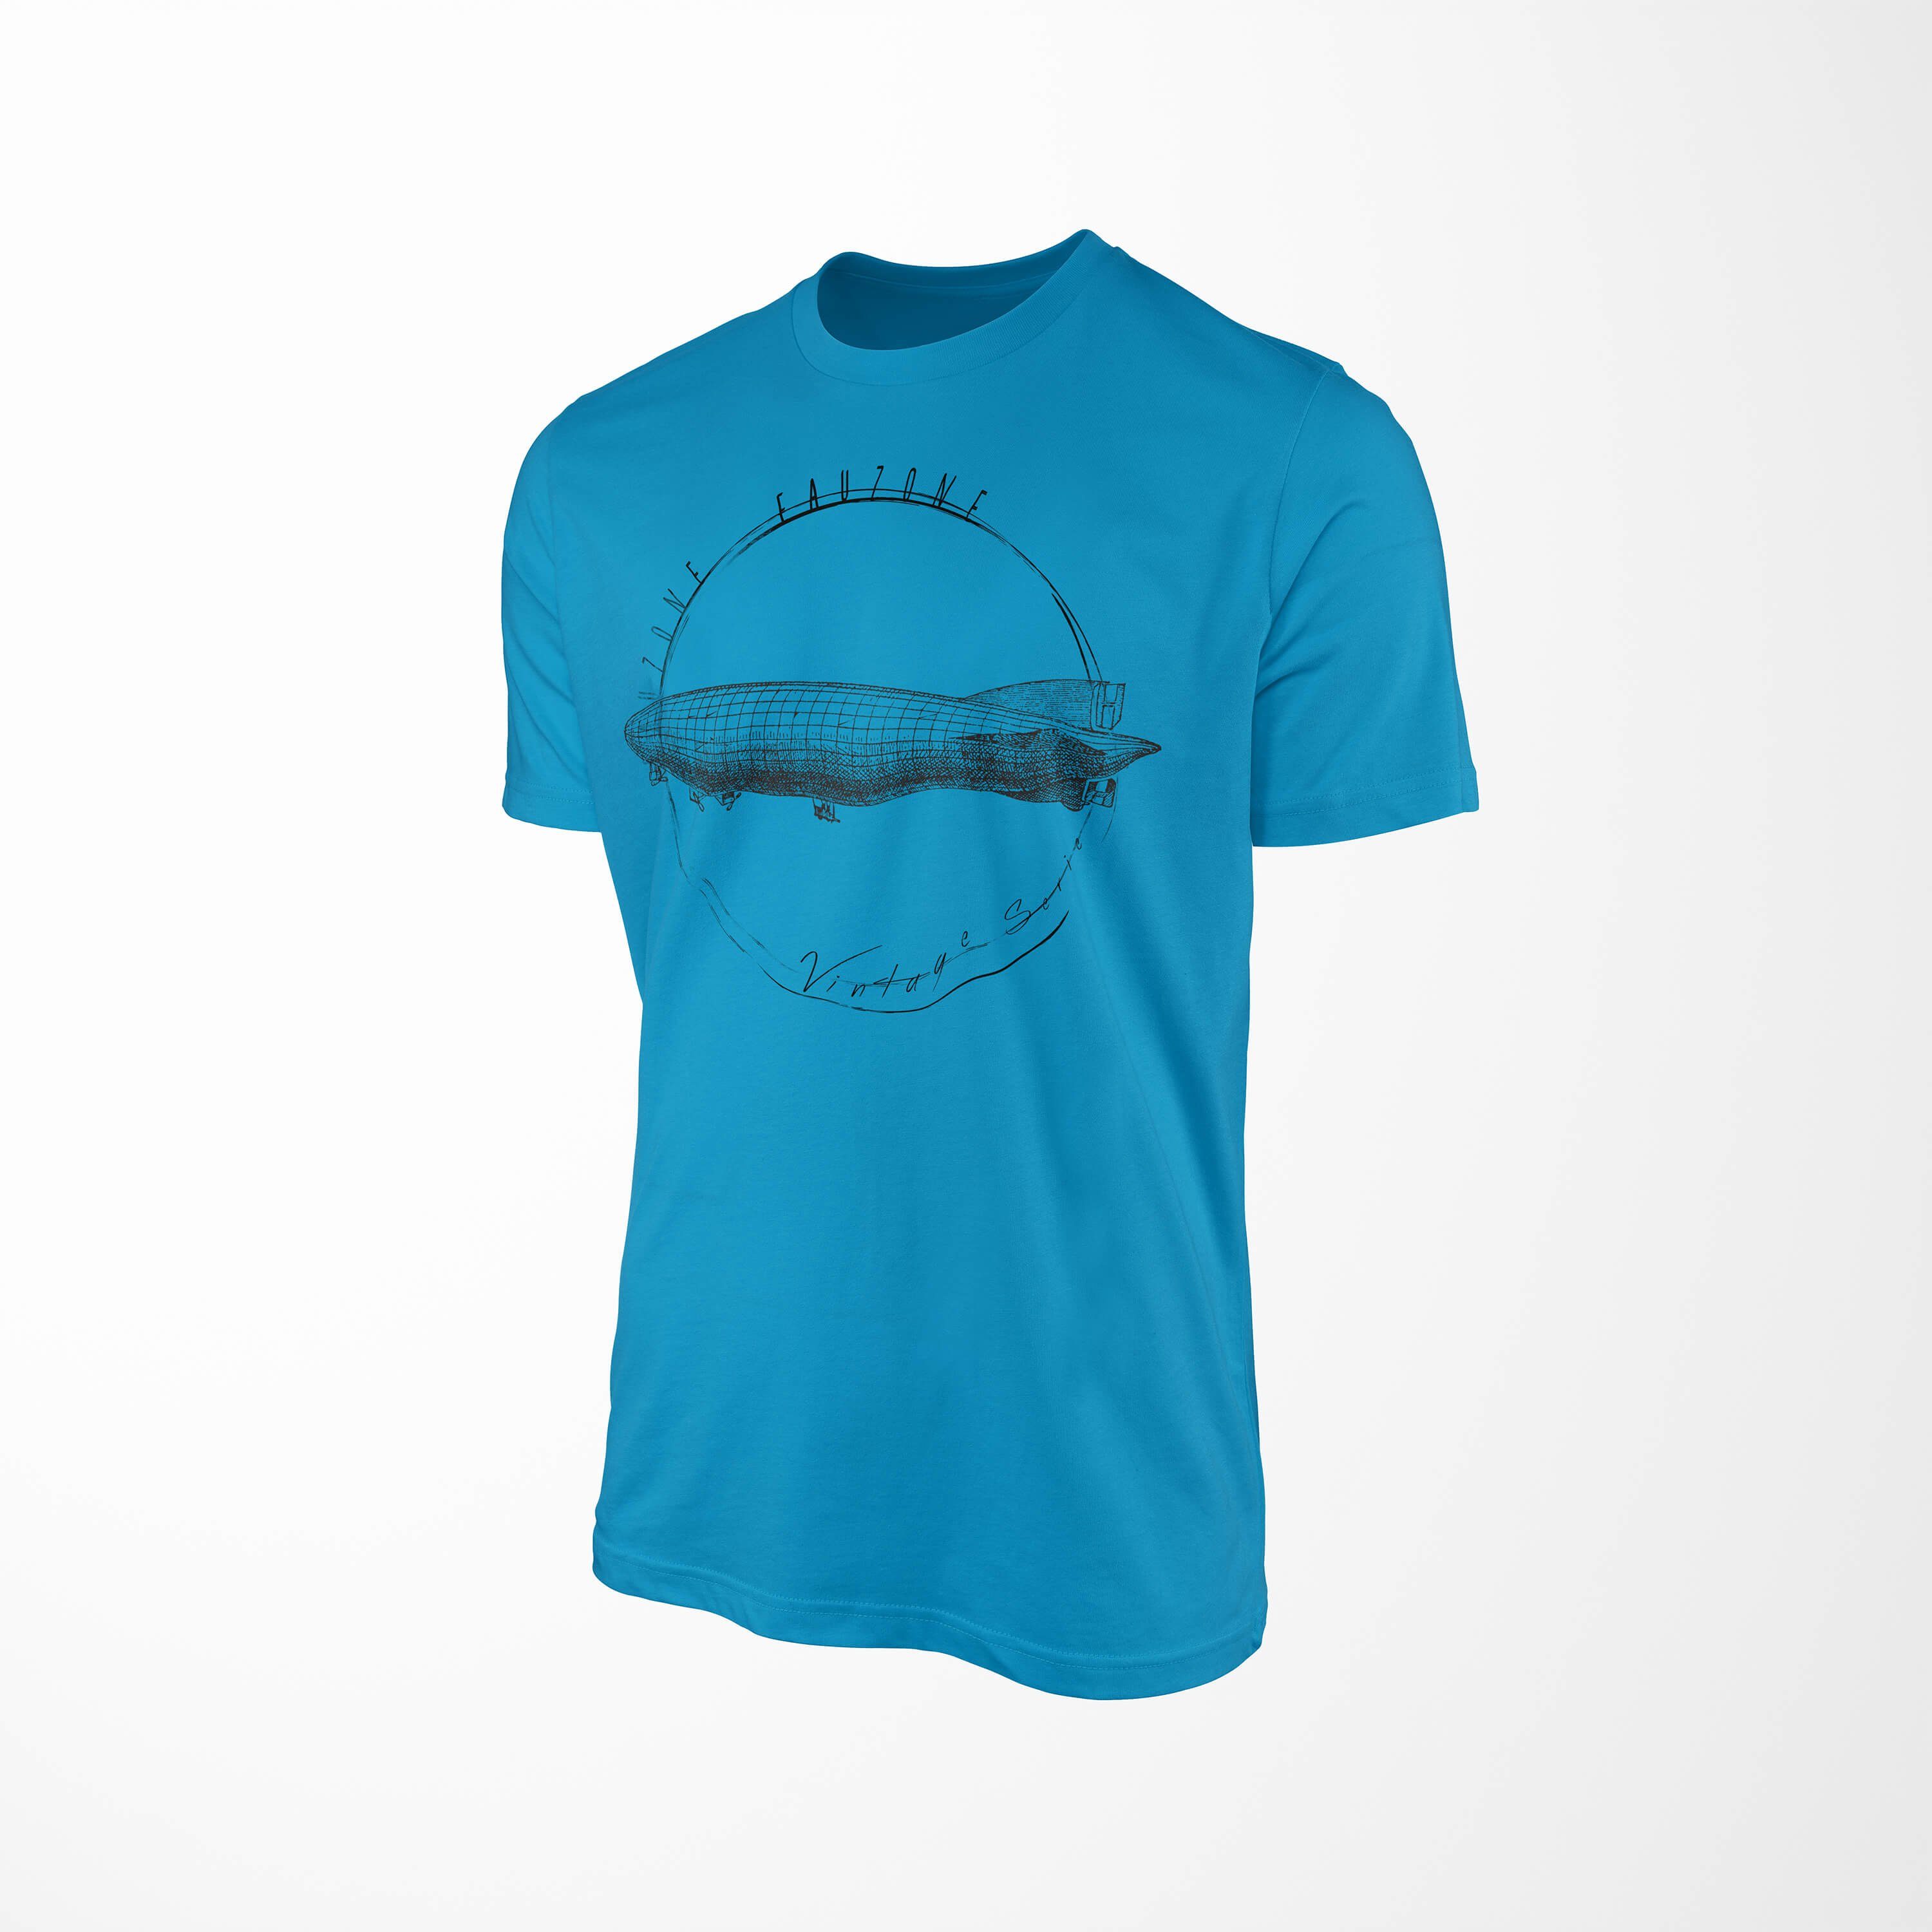 Vintage Art Sinus T-Shirt Herren Atoll Zeppelin T-Shirt